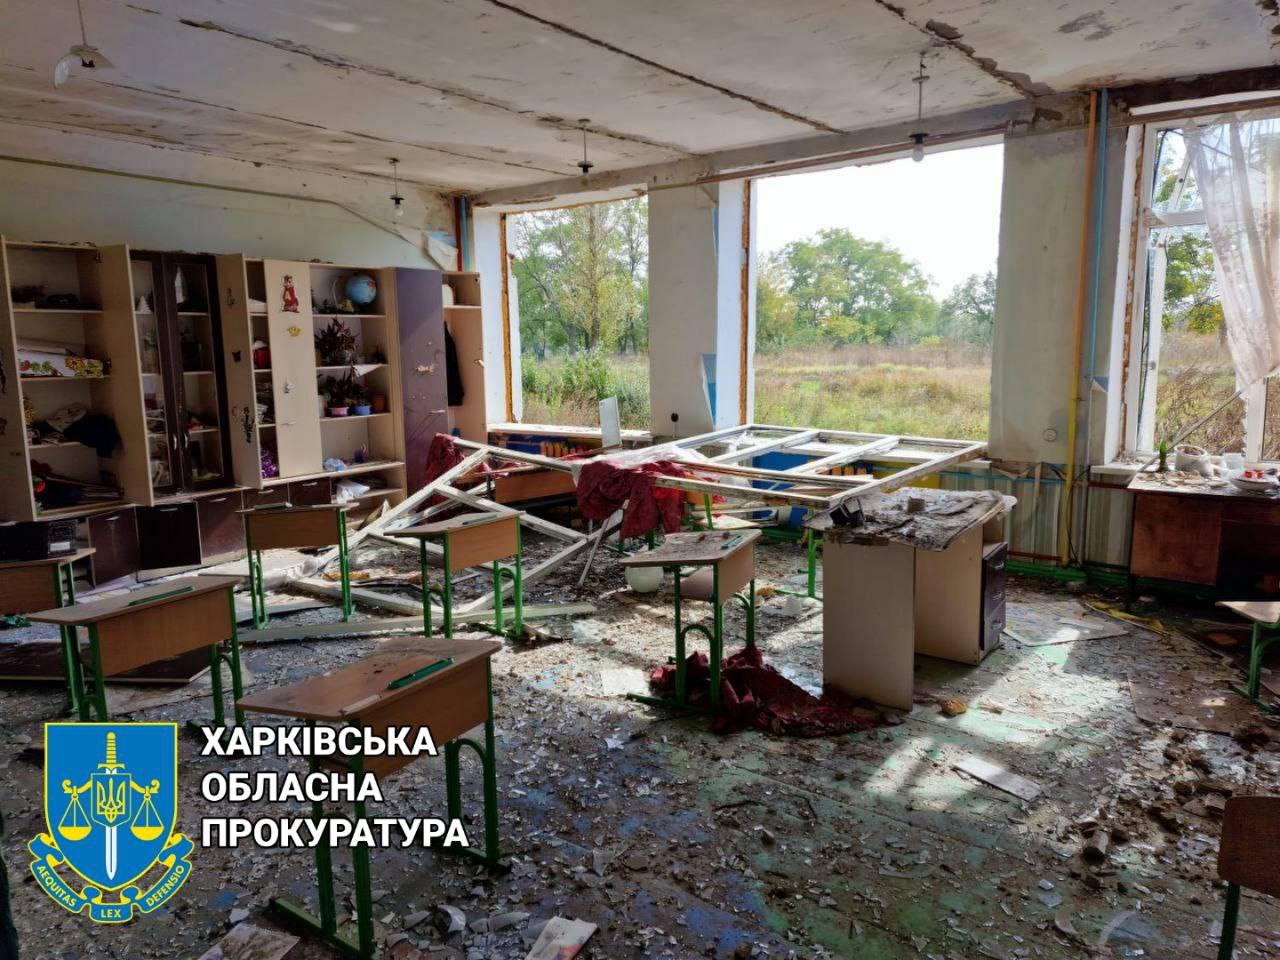 126 школ разрушили оккупанты на Харьковщине: прокуратура показала одну из них